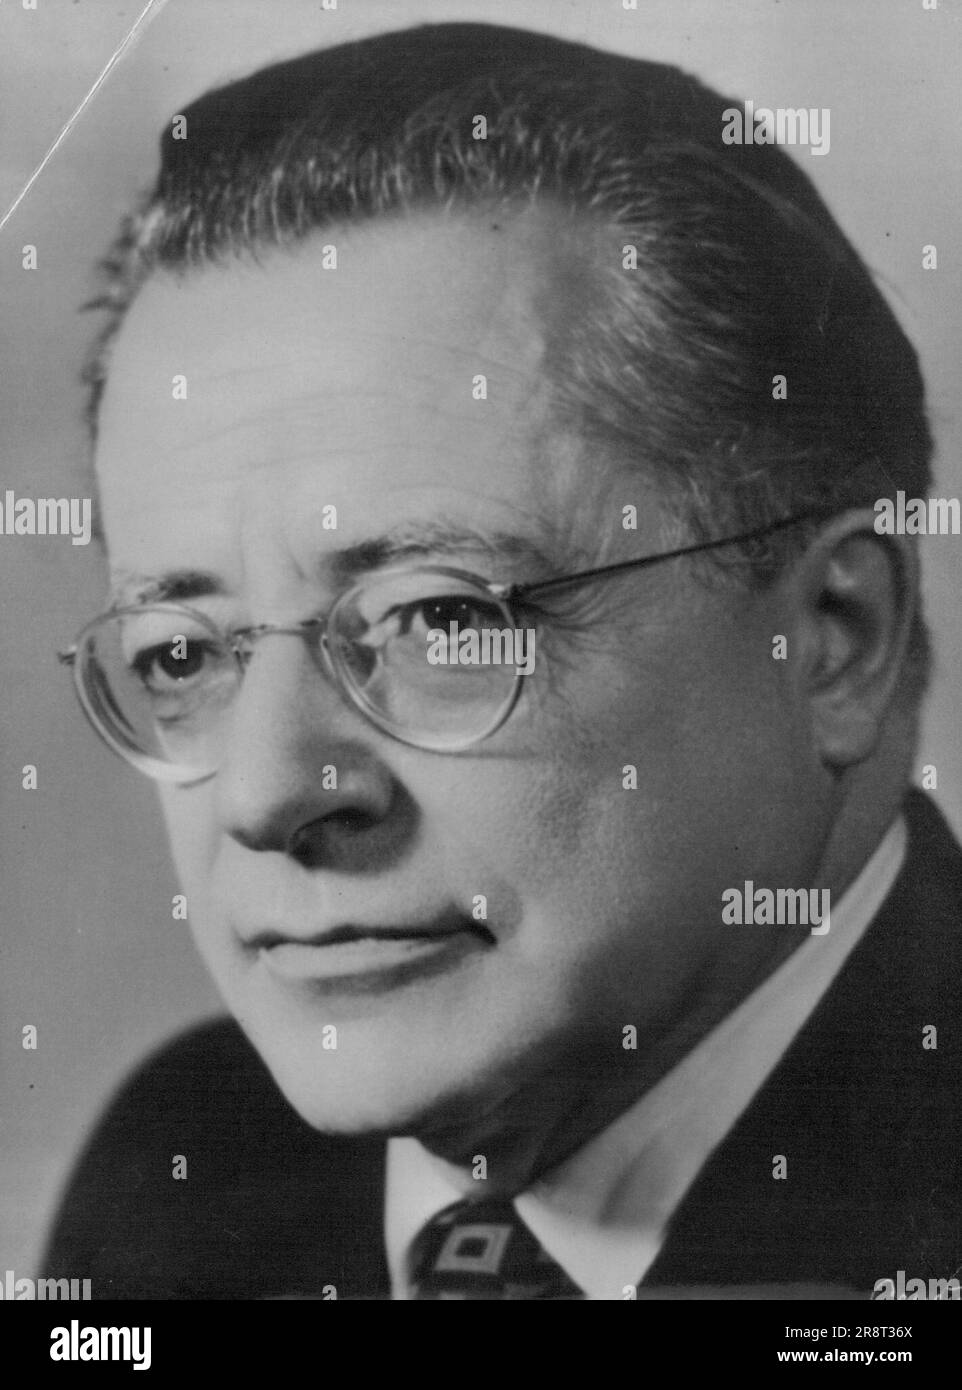 Politici italiani: Palmiro Togliatti - Capo del Partito Comunista Italiano; membro della Camera dei deputati. Novembre 30, 1954. (Foto con Camera Press). Foto Stock